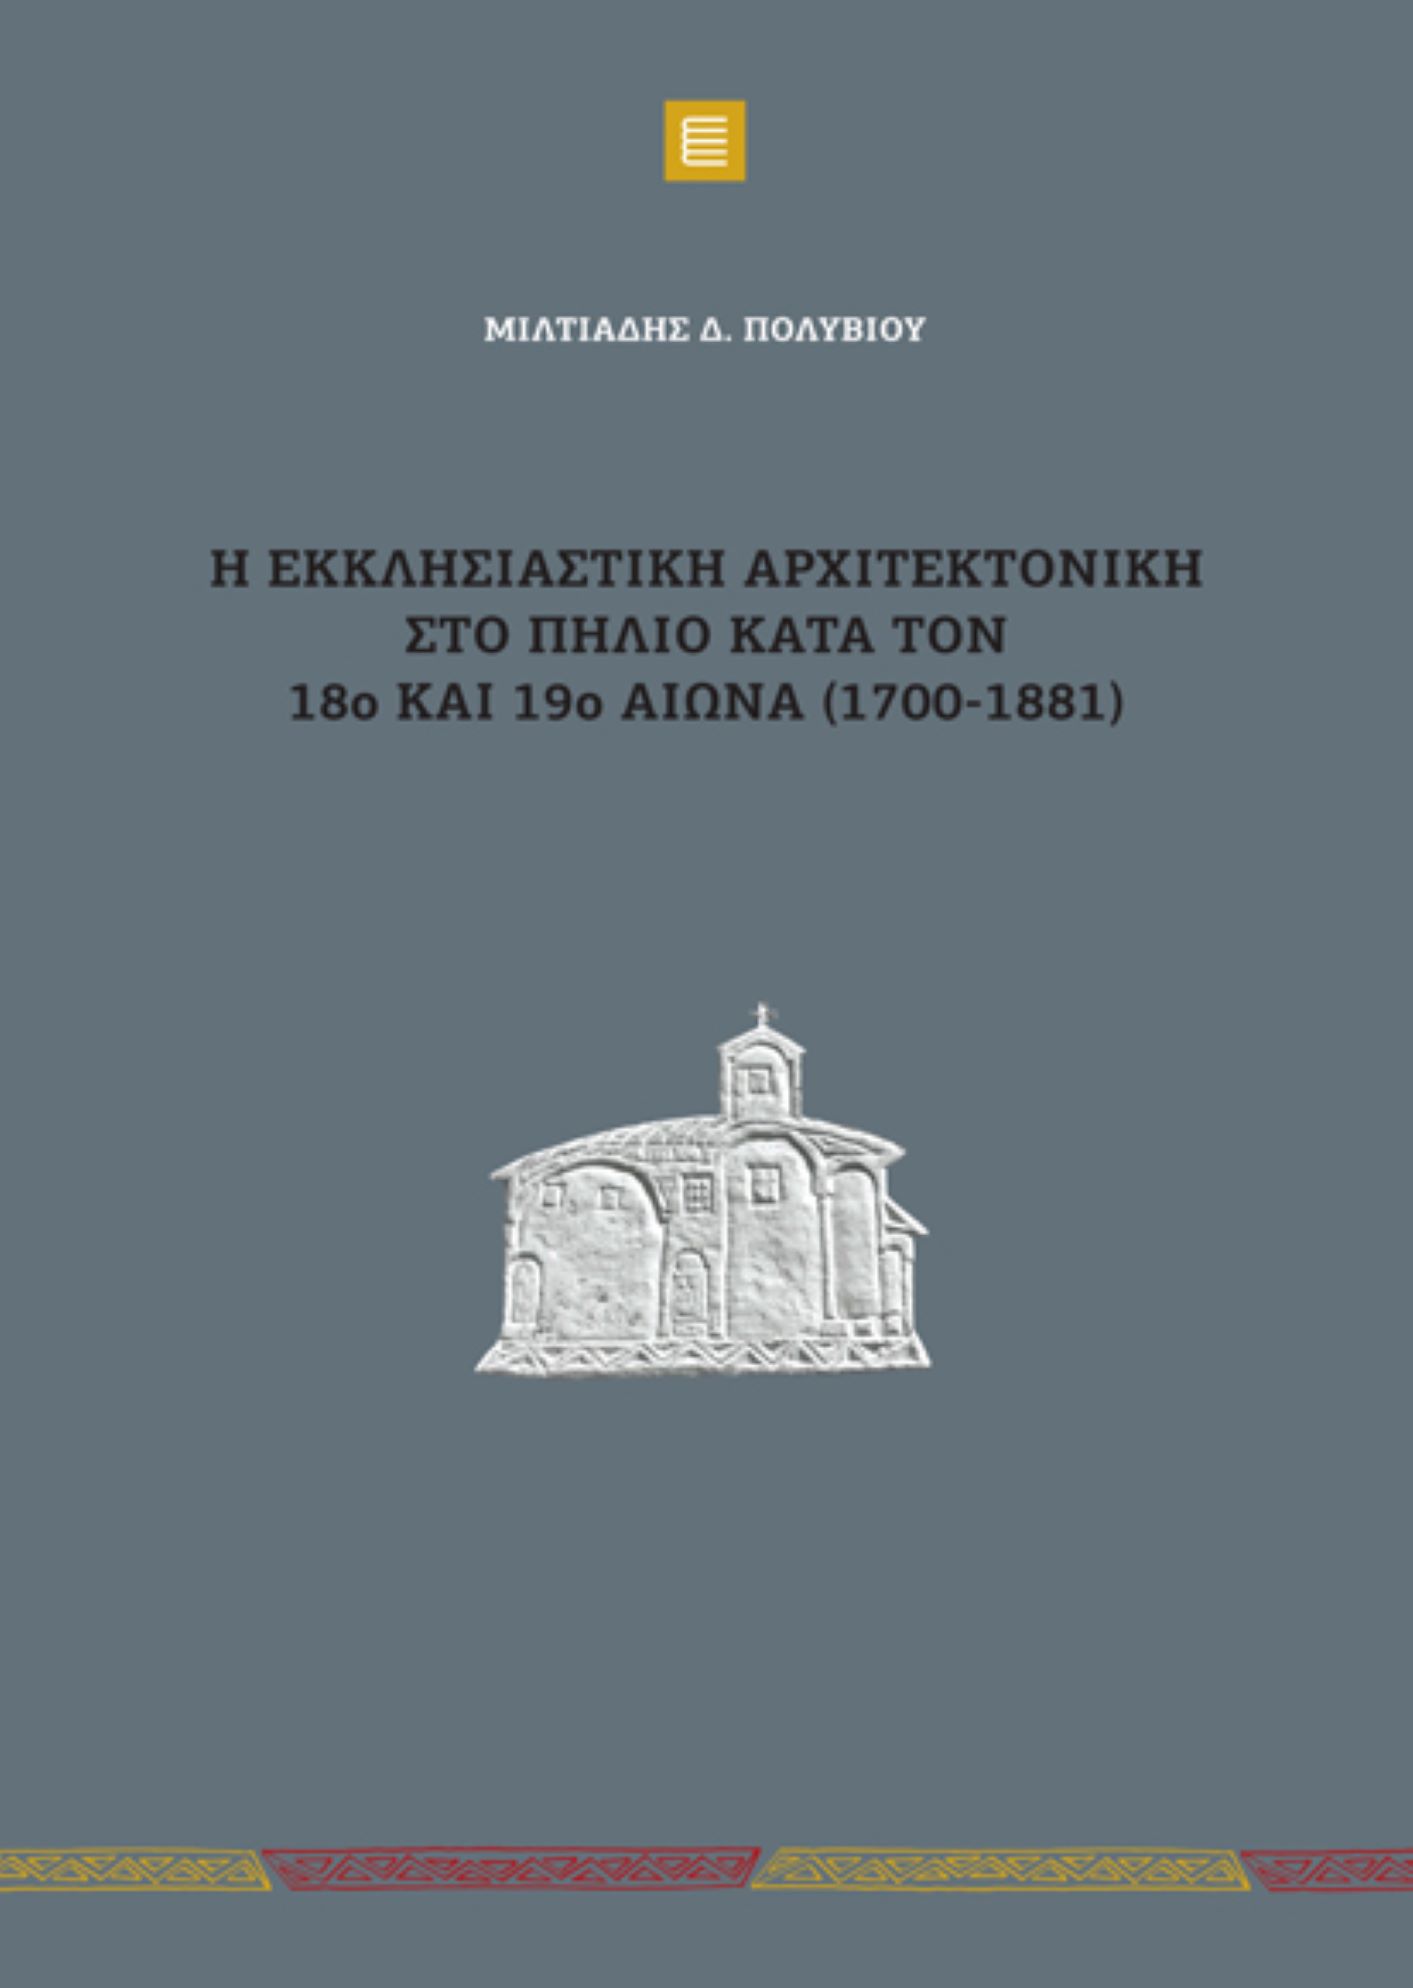 “Η εκκλησιαστική αρχιτεκτονική στο Πήλιο κατά τον 18ο και 19ο αιώνα (1700-1881)